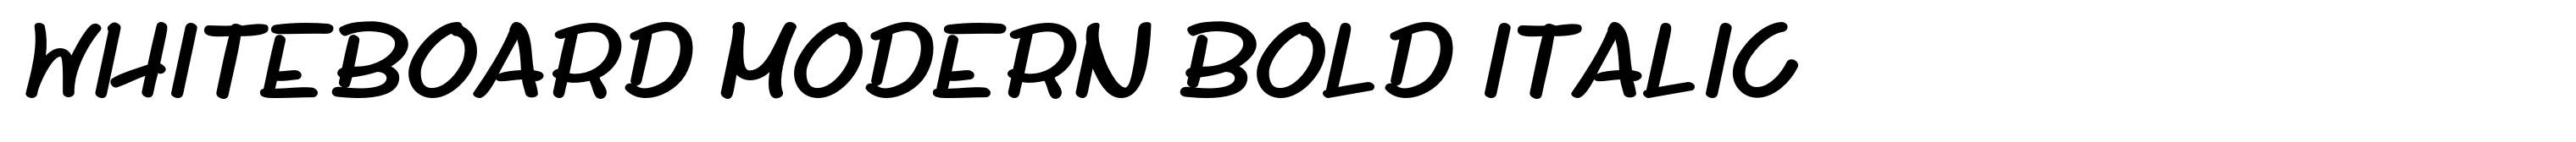 Whiteboard Modern Bold Italic